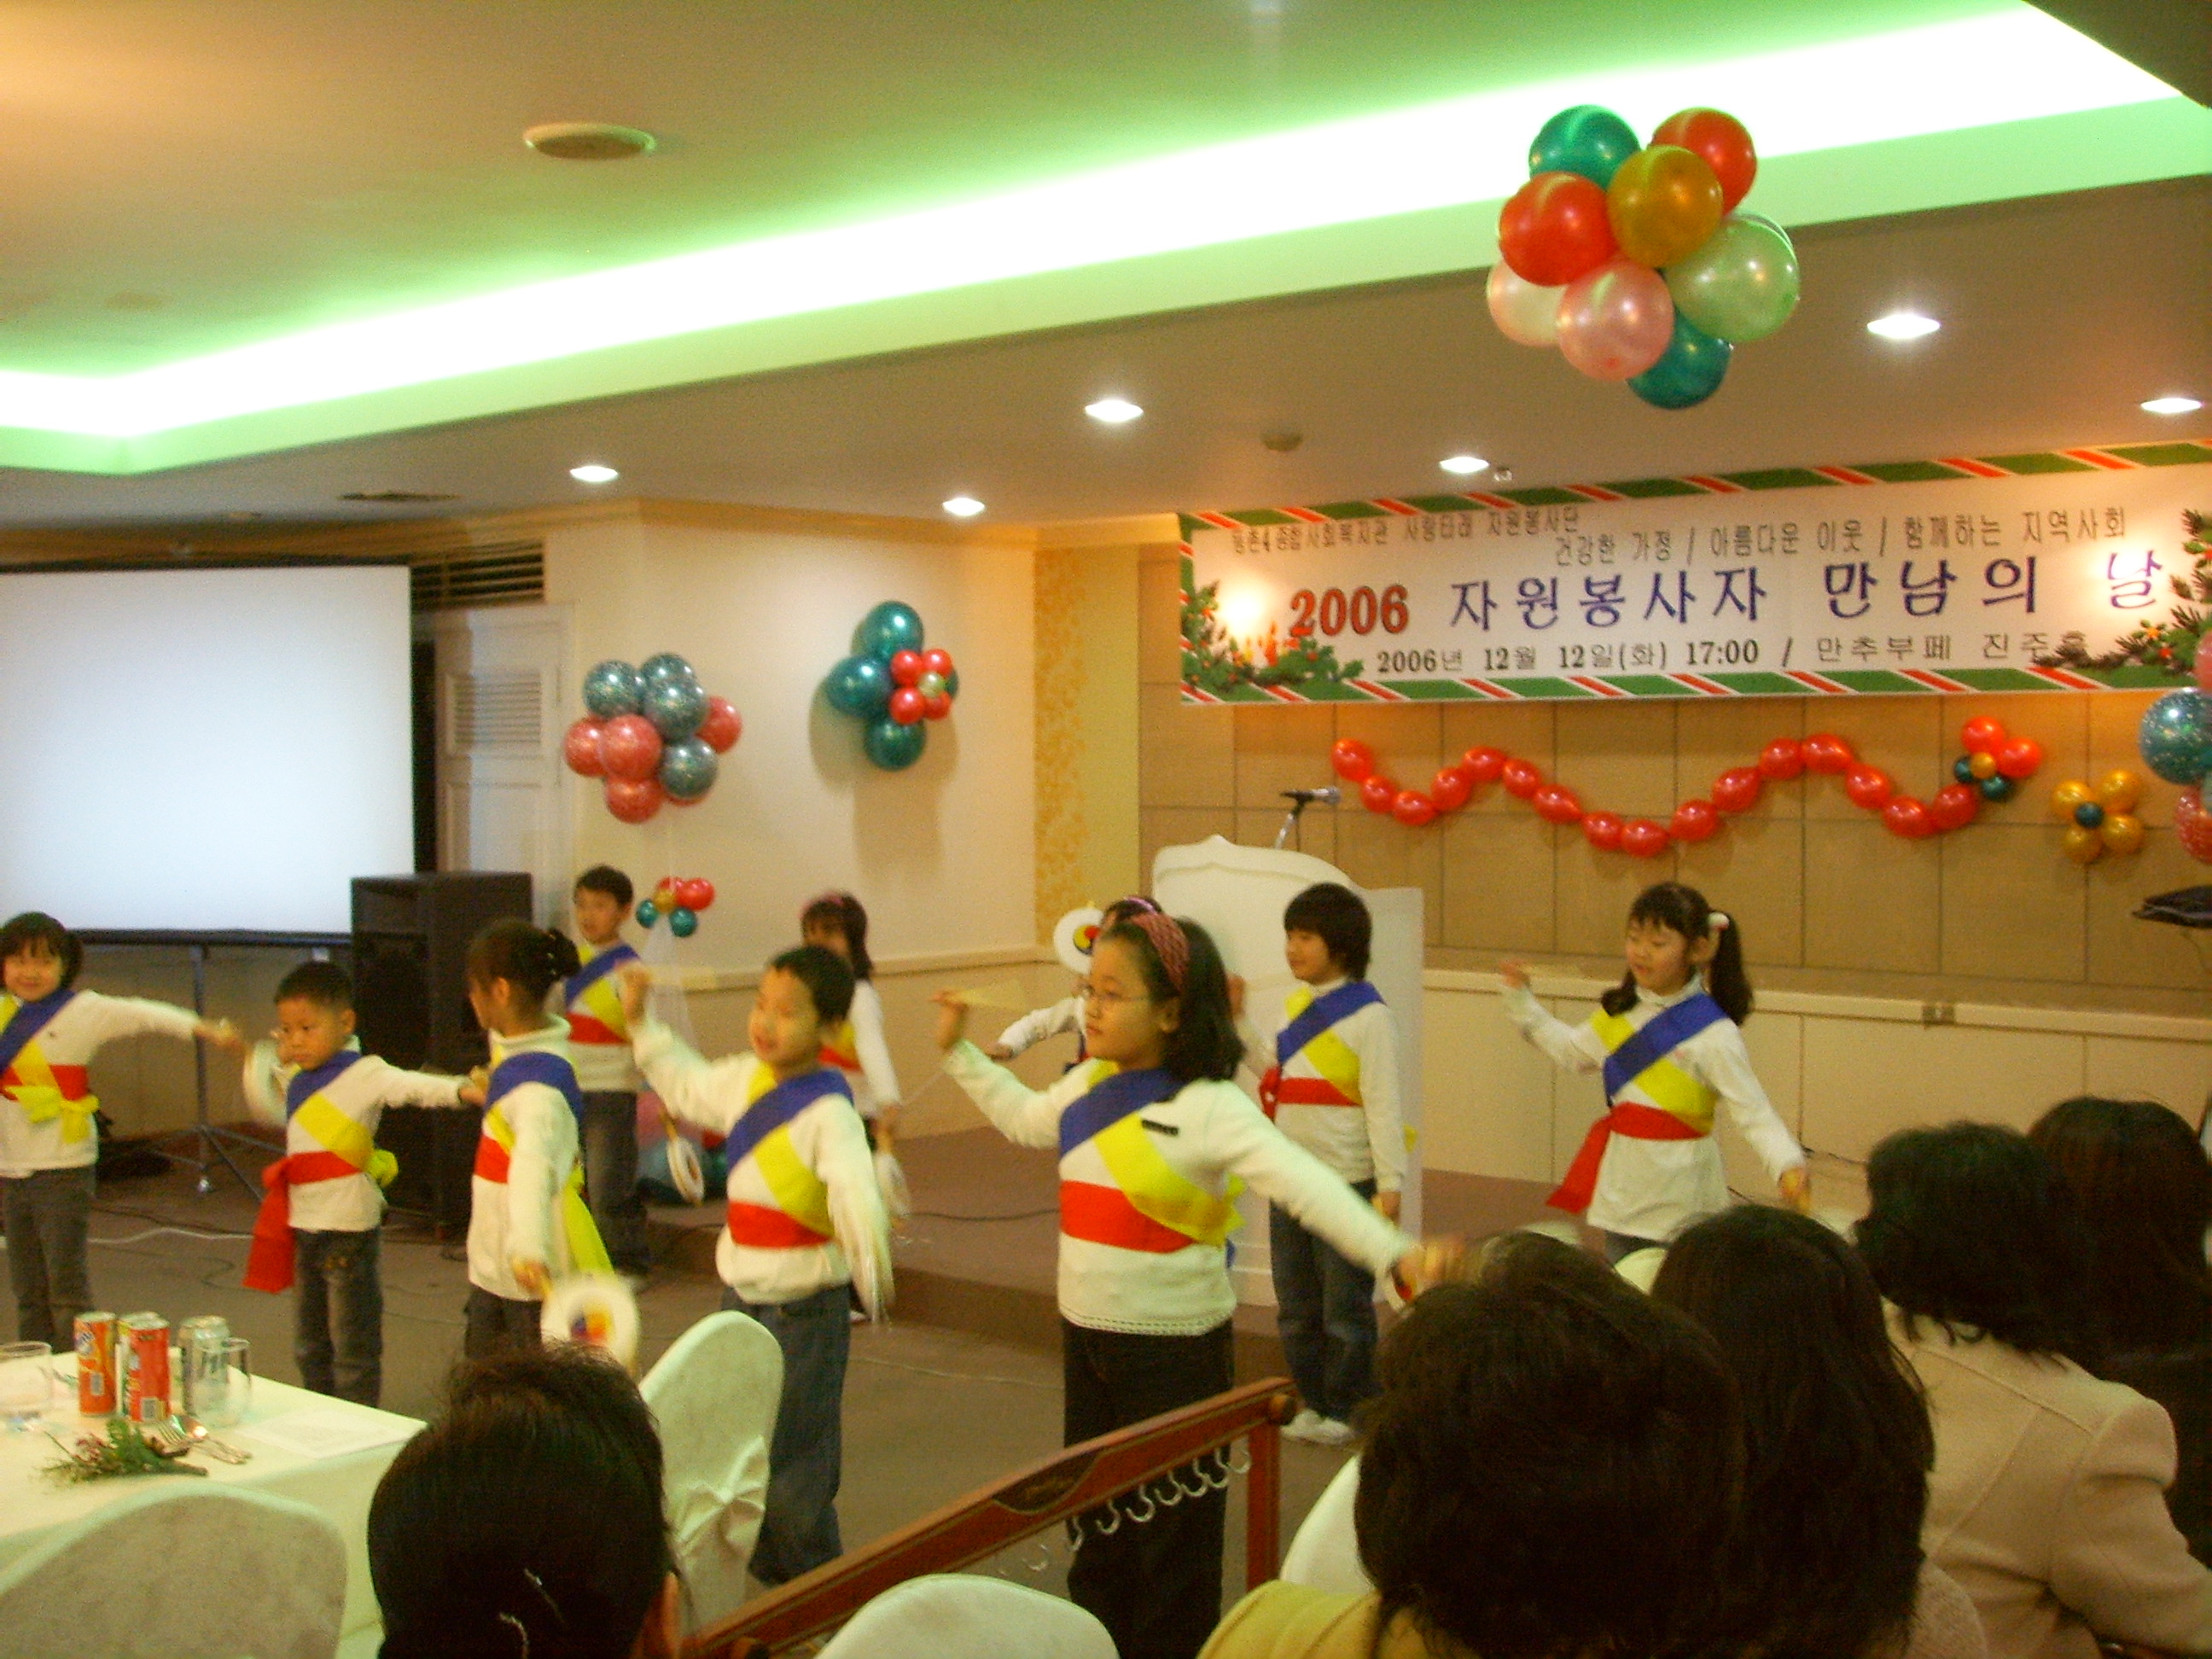 2006자원봉사만남의날 아이들의 소고춤